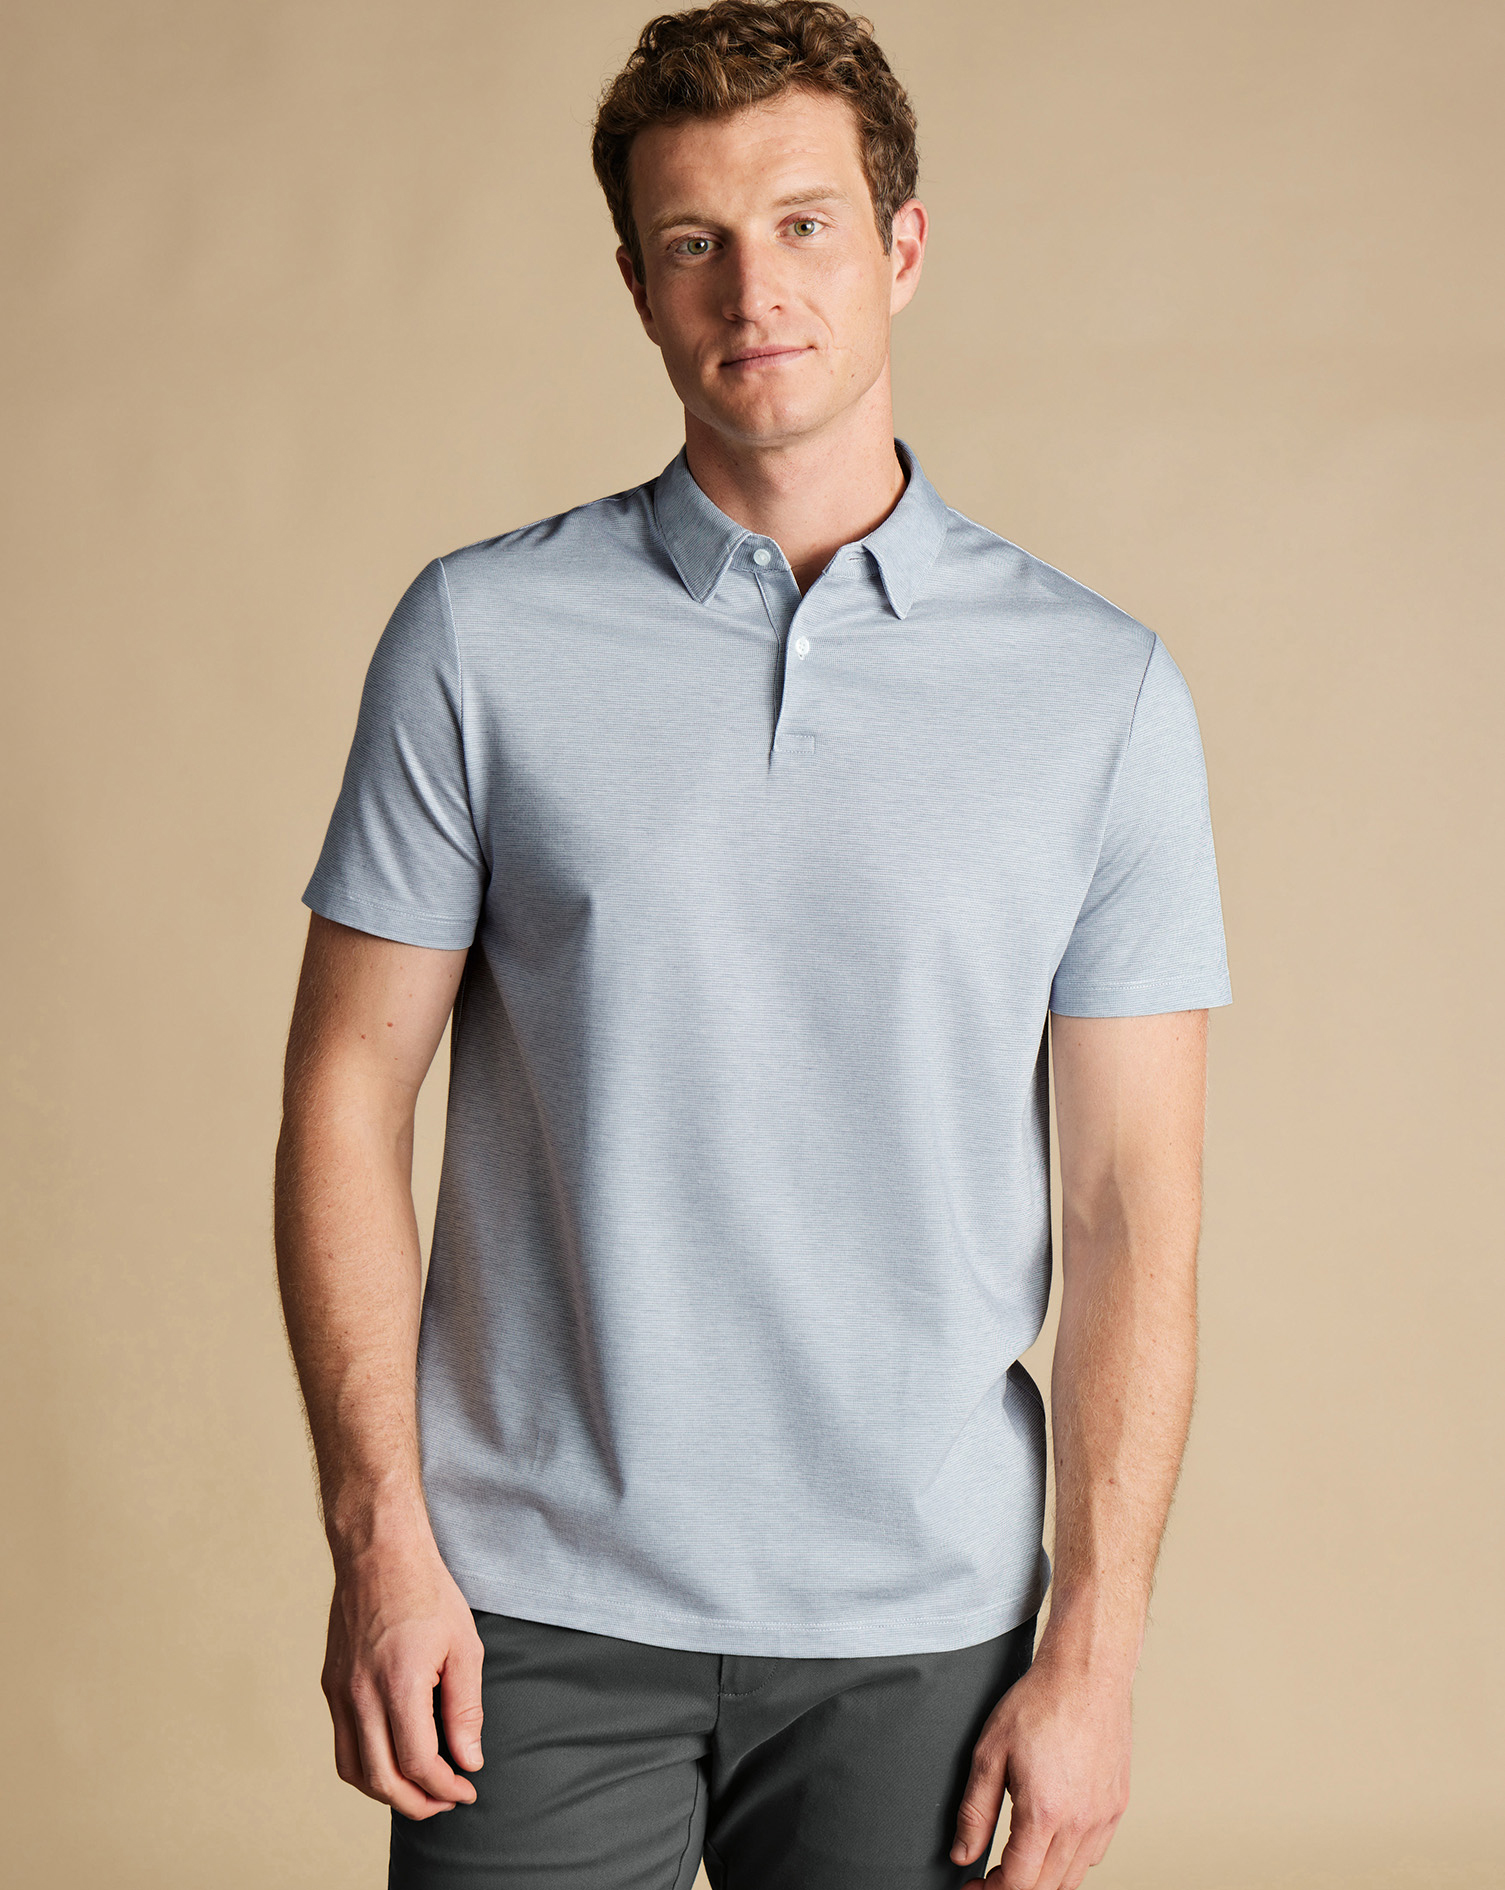 Men's Charles Tyrwhitt Cool Textured Polo Shirt - Light Blue Size Medium Cotton
